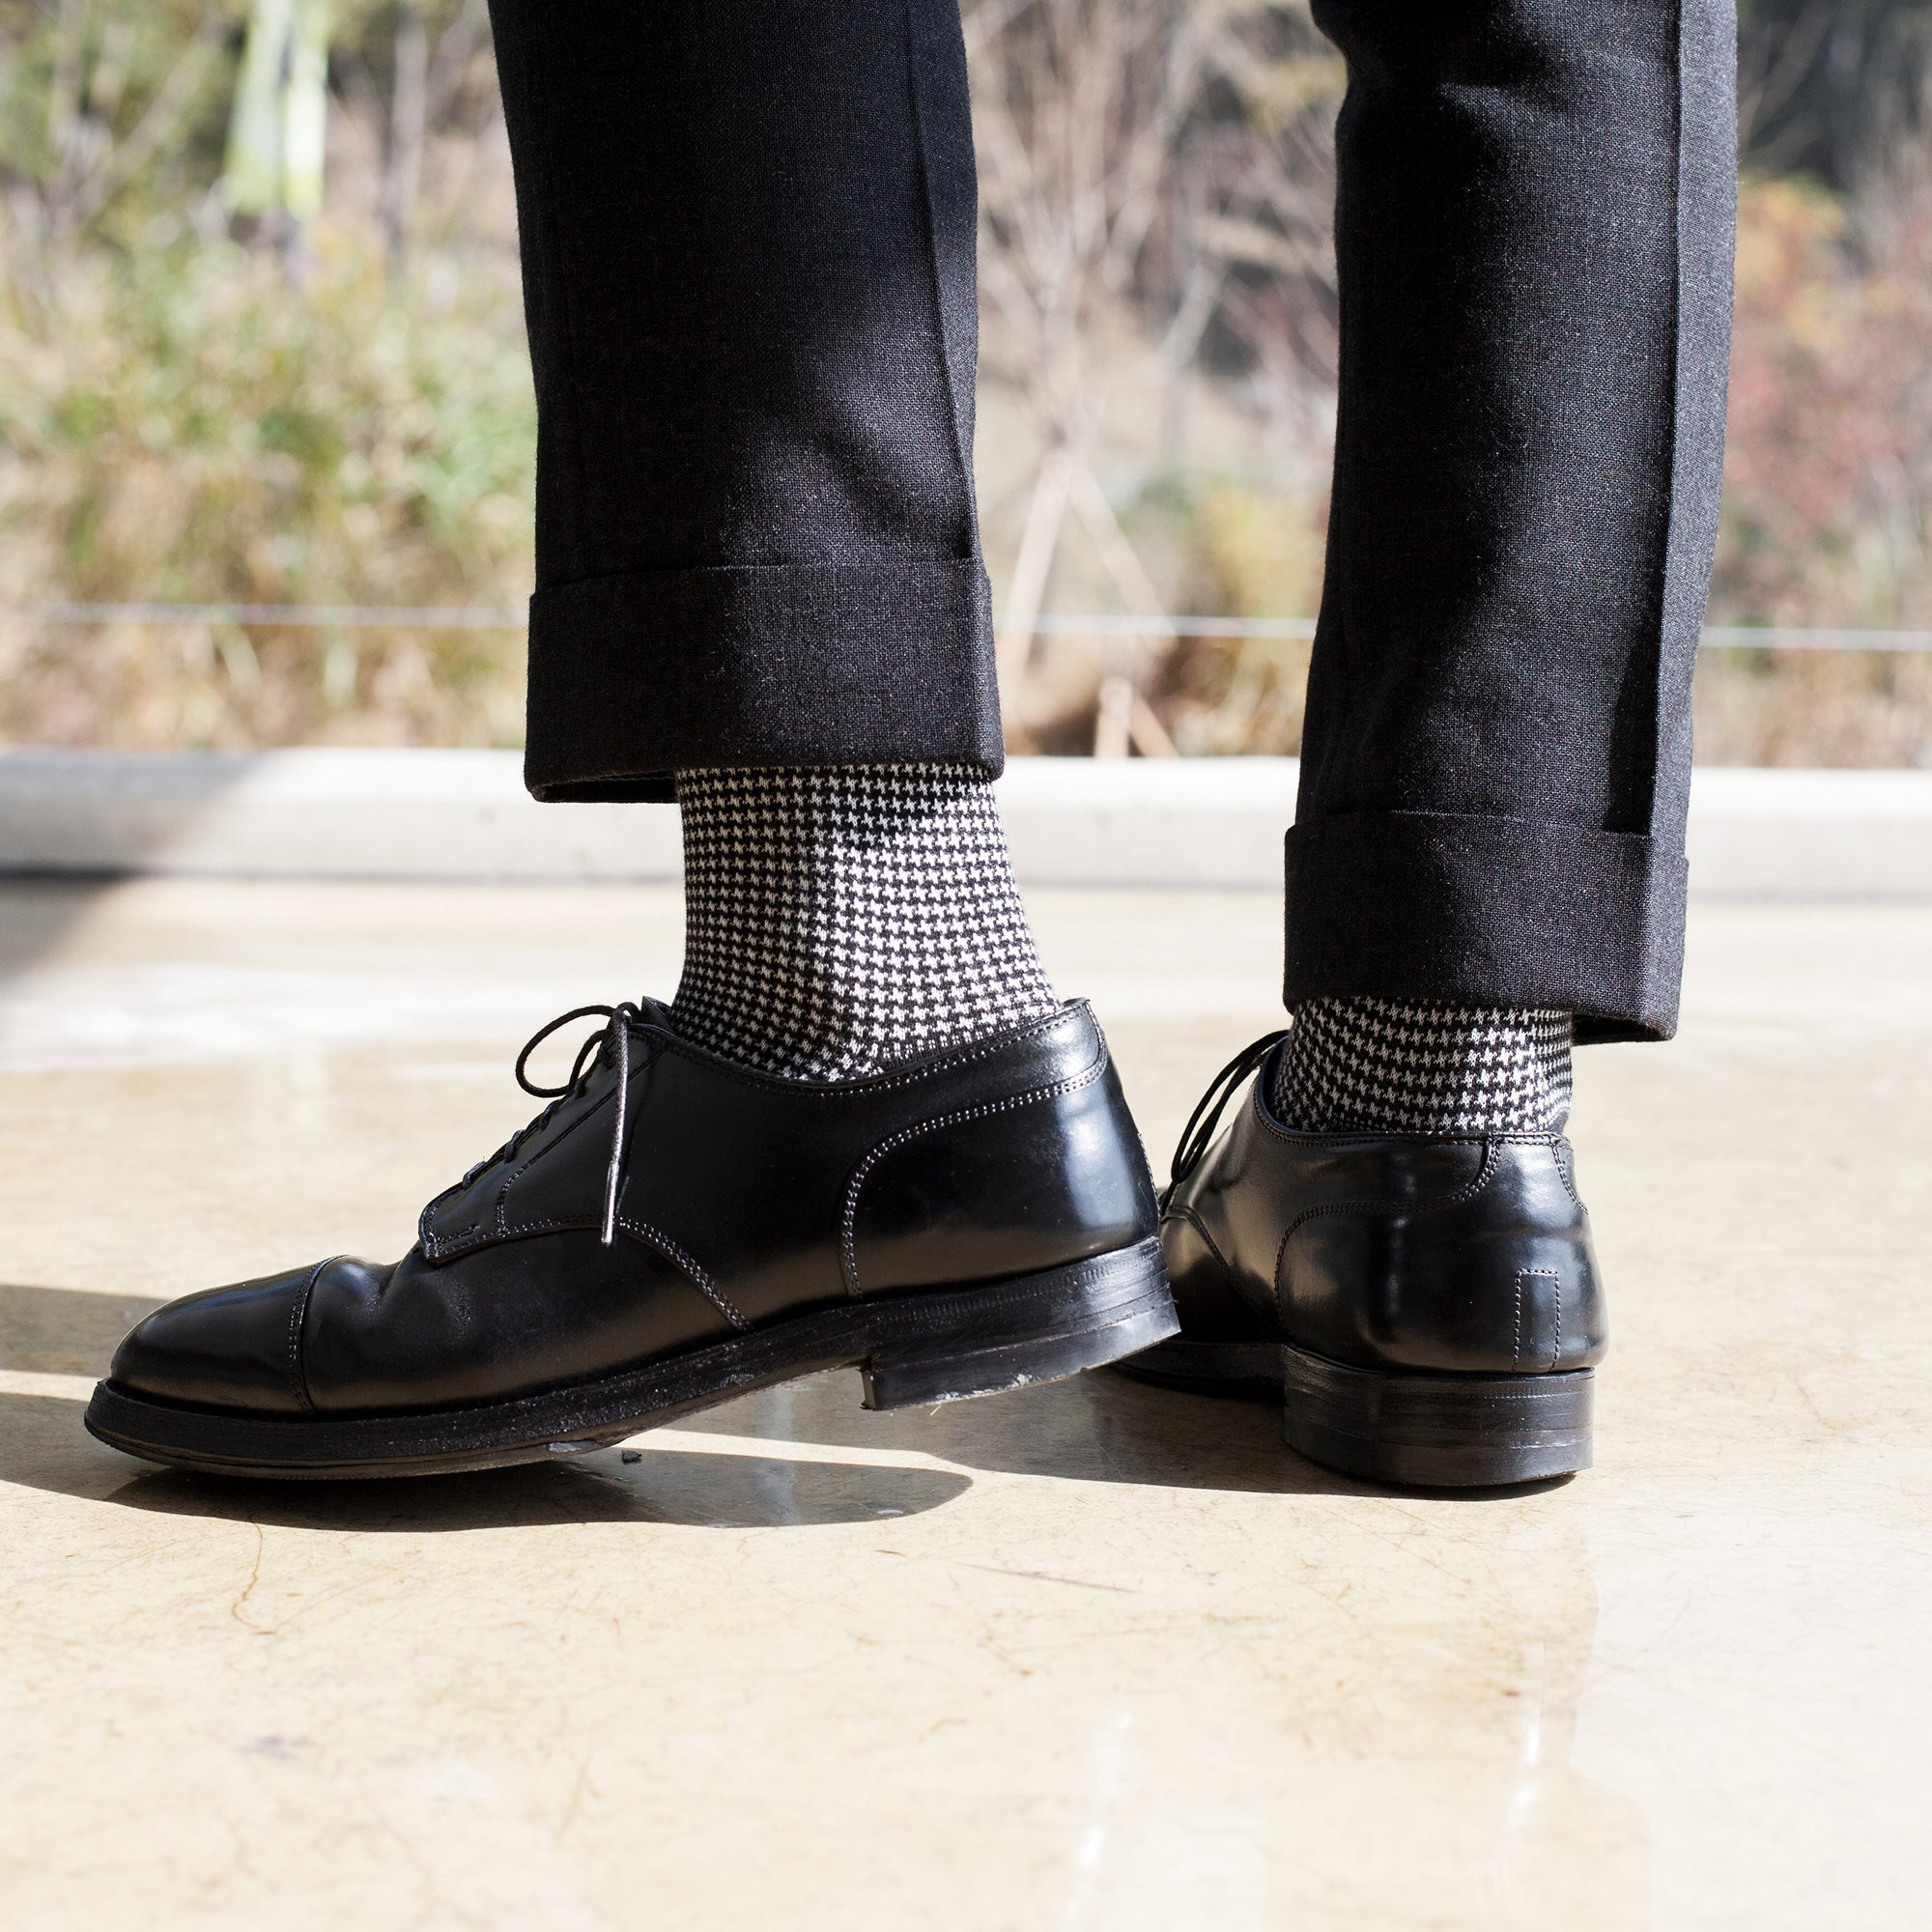 Men's Black & White Houndstooth Dress Socks | Votta Socks